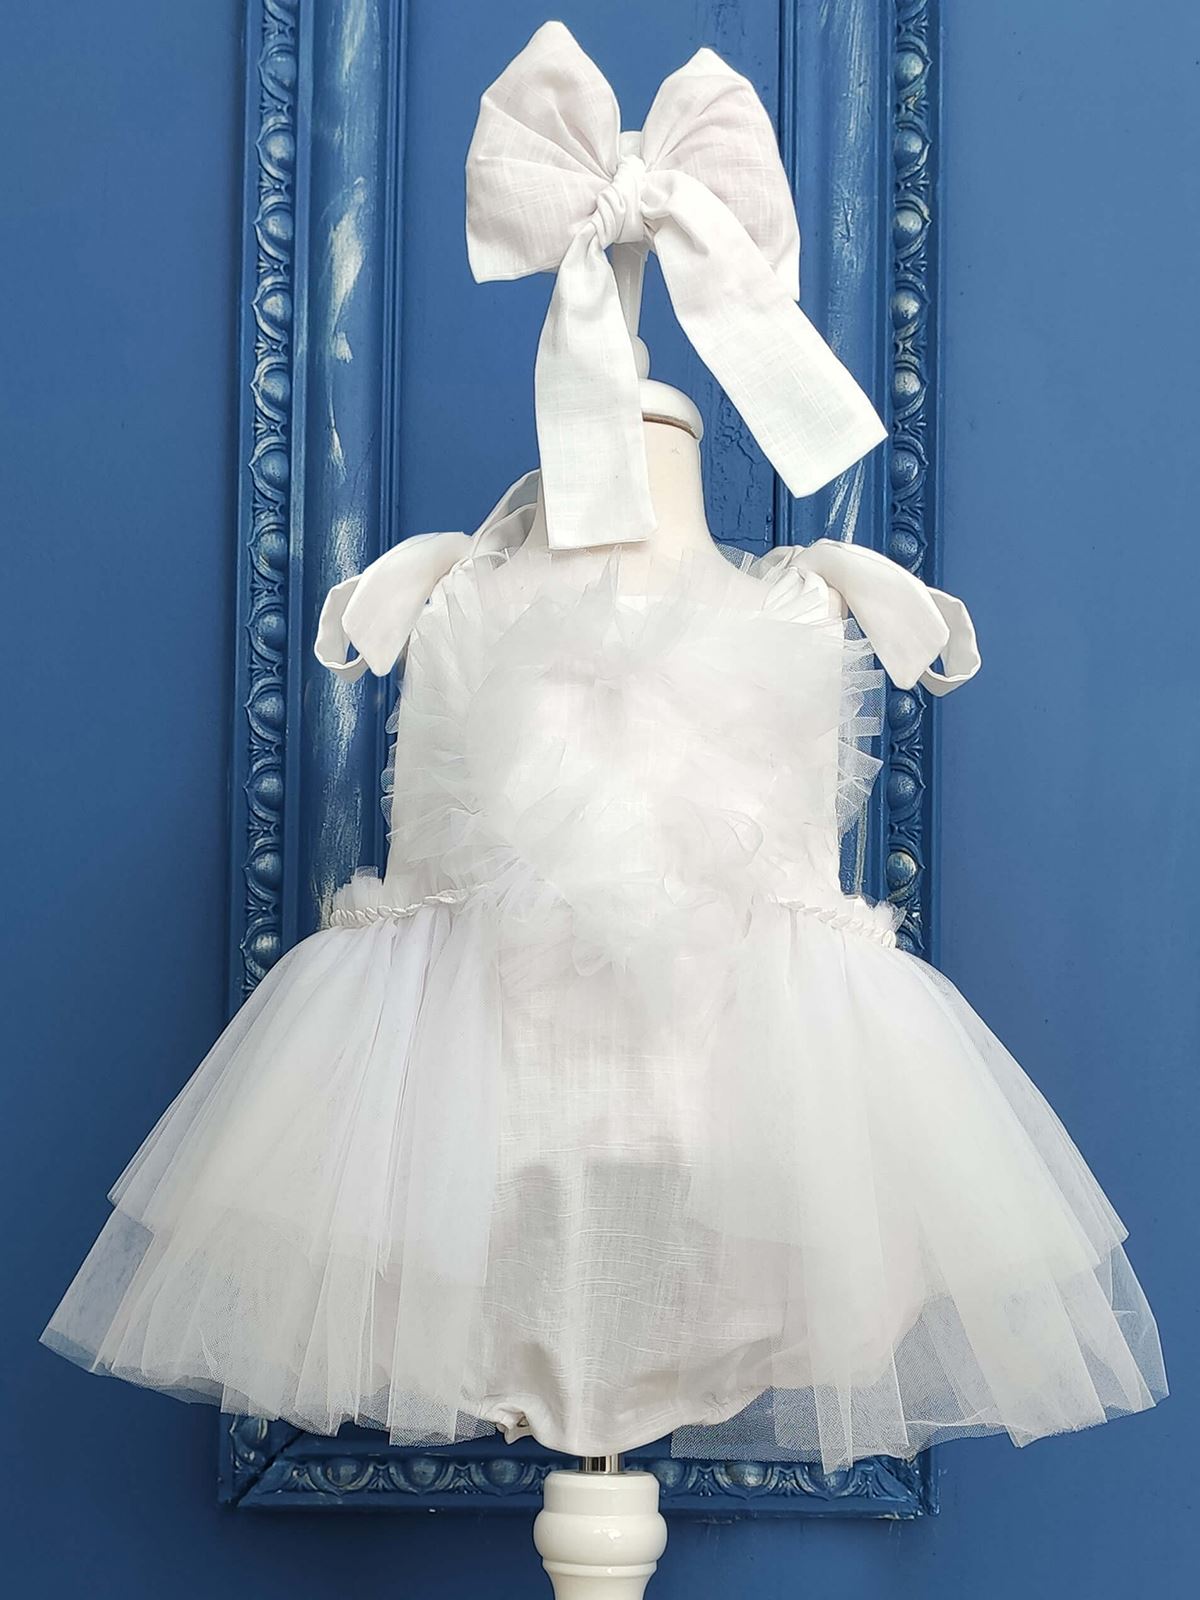 Shecco Babba Kalpli Pamuk Kız Bebek Tulum Tütü Elbise ve Bandana Takım, Çıtçıtlı Bebek Doğum Günü Elbisesi 0-2 Yaş Tulum Beyaz